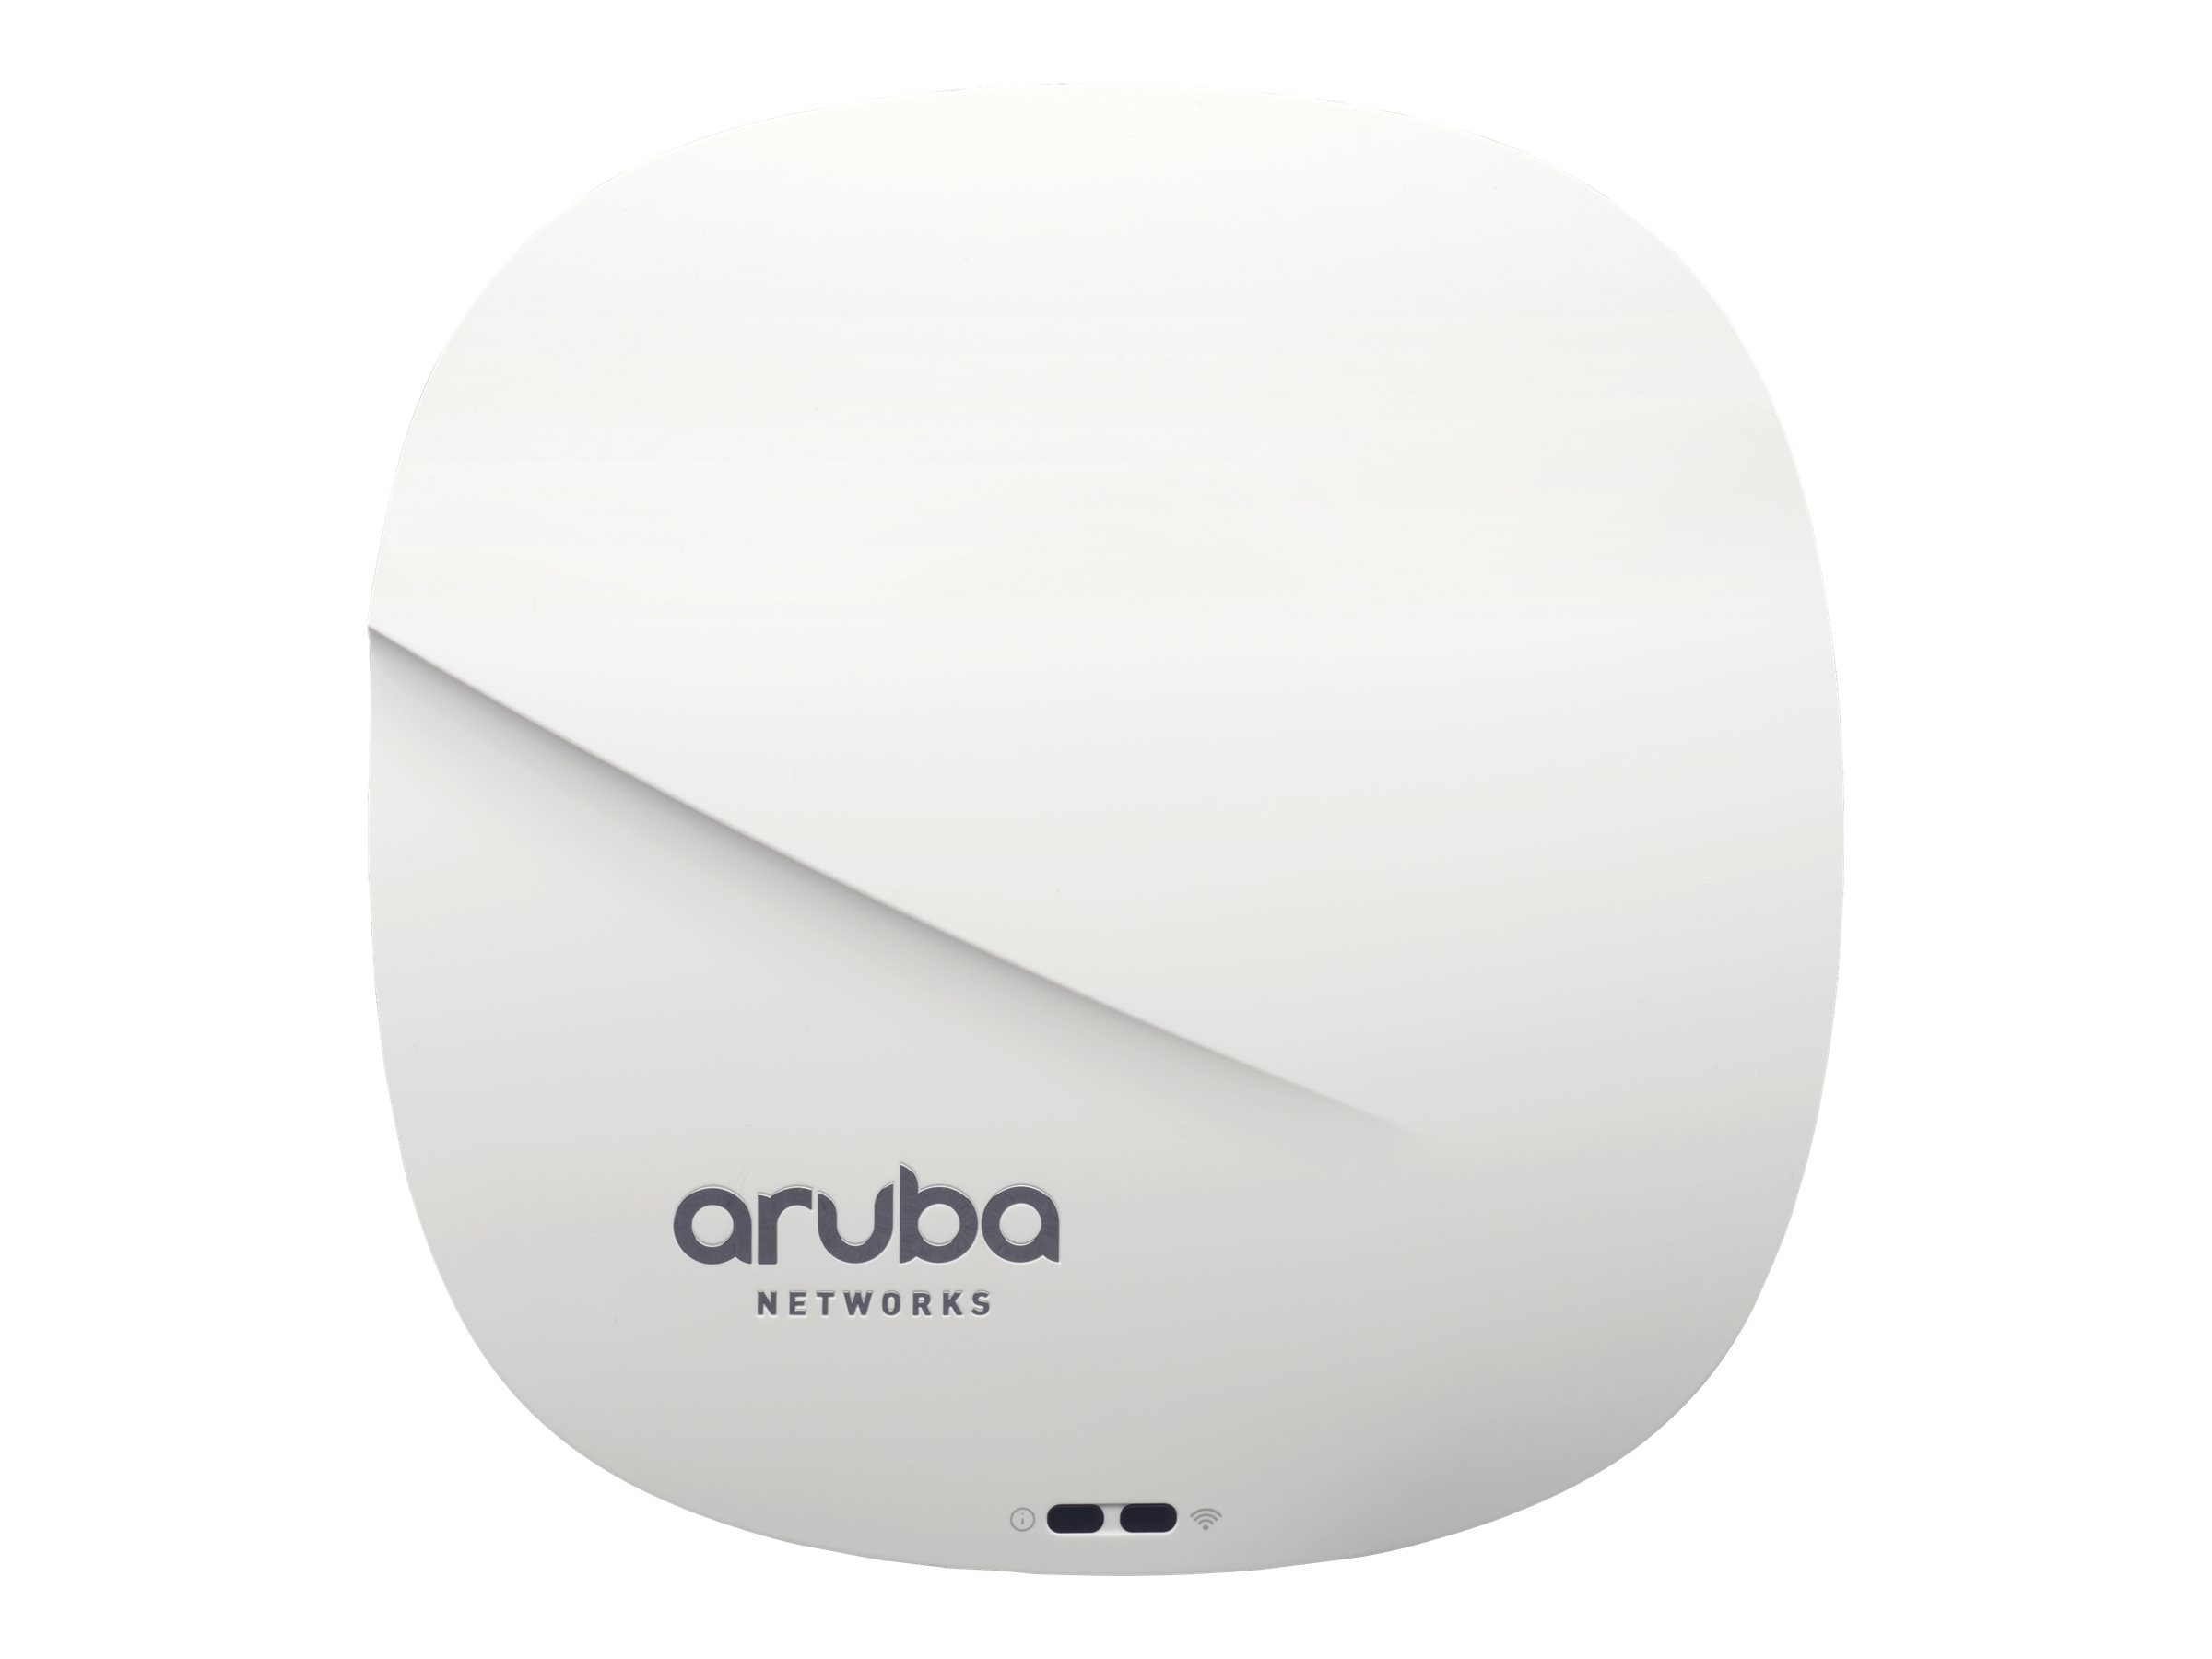 HPE Aruba AP-334 - Borne d'accès sans fil - Wi-Fi 5 - 2.4 GHz, 5 GHz - Tension CC - intégré au plafond - JW799A - Points d'accès sans fil